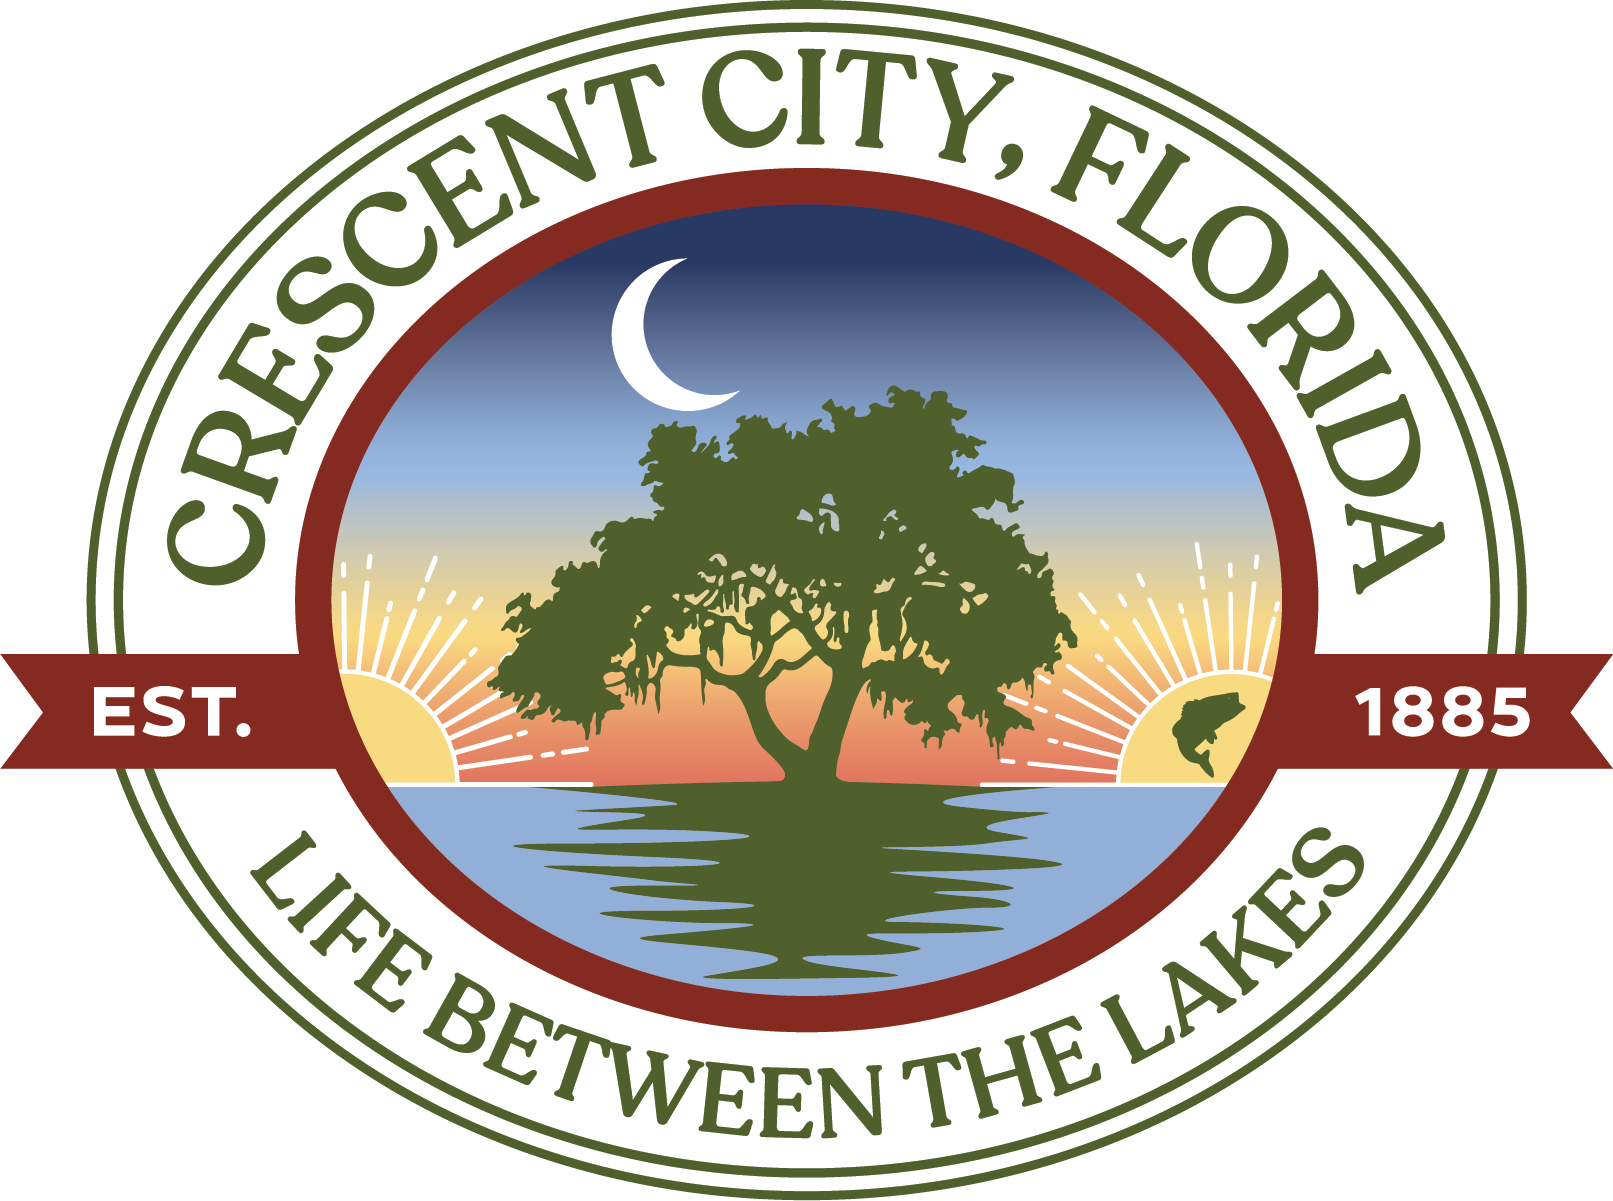 Crescent City, Florida